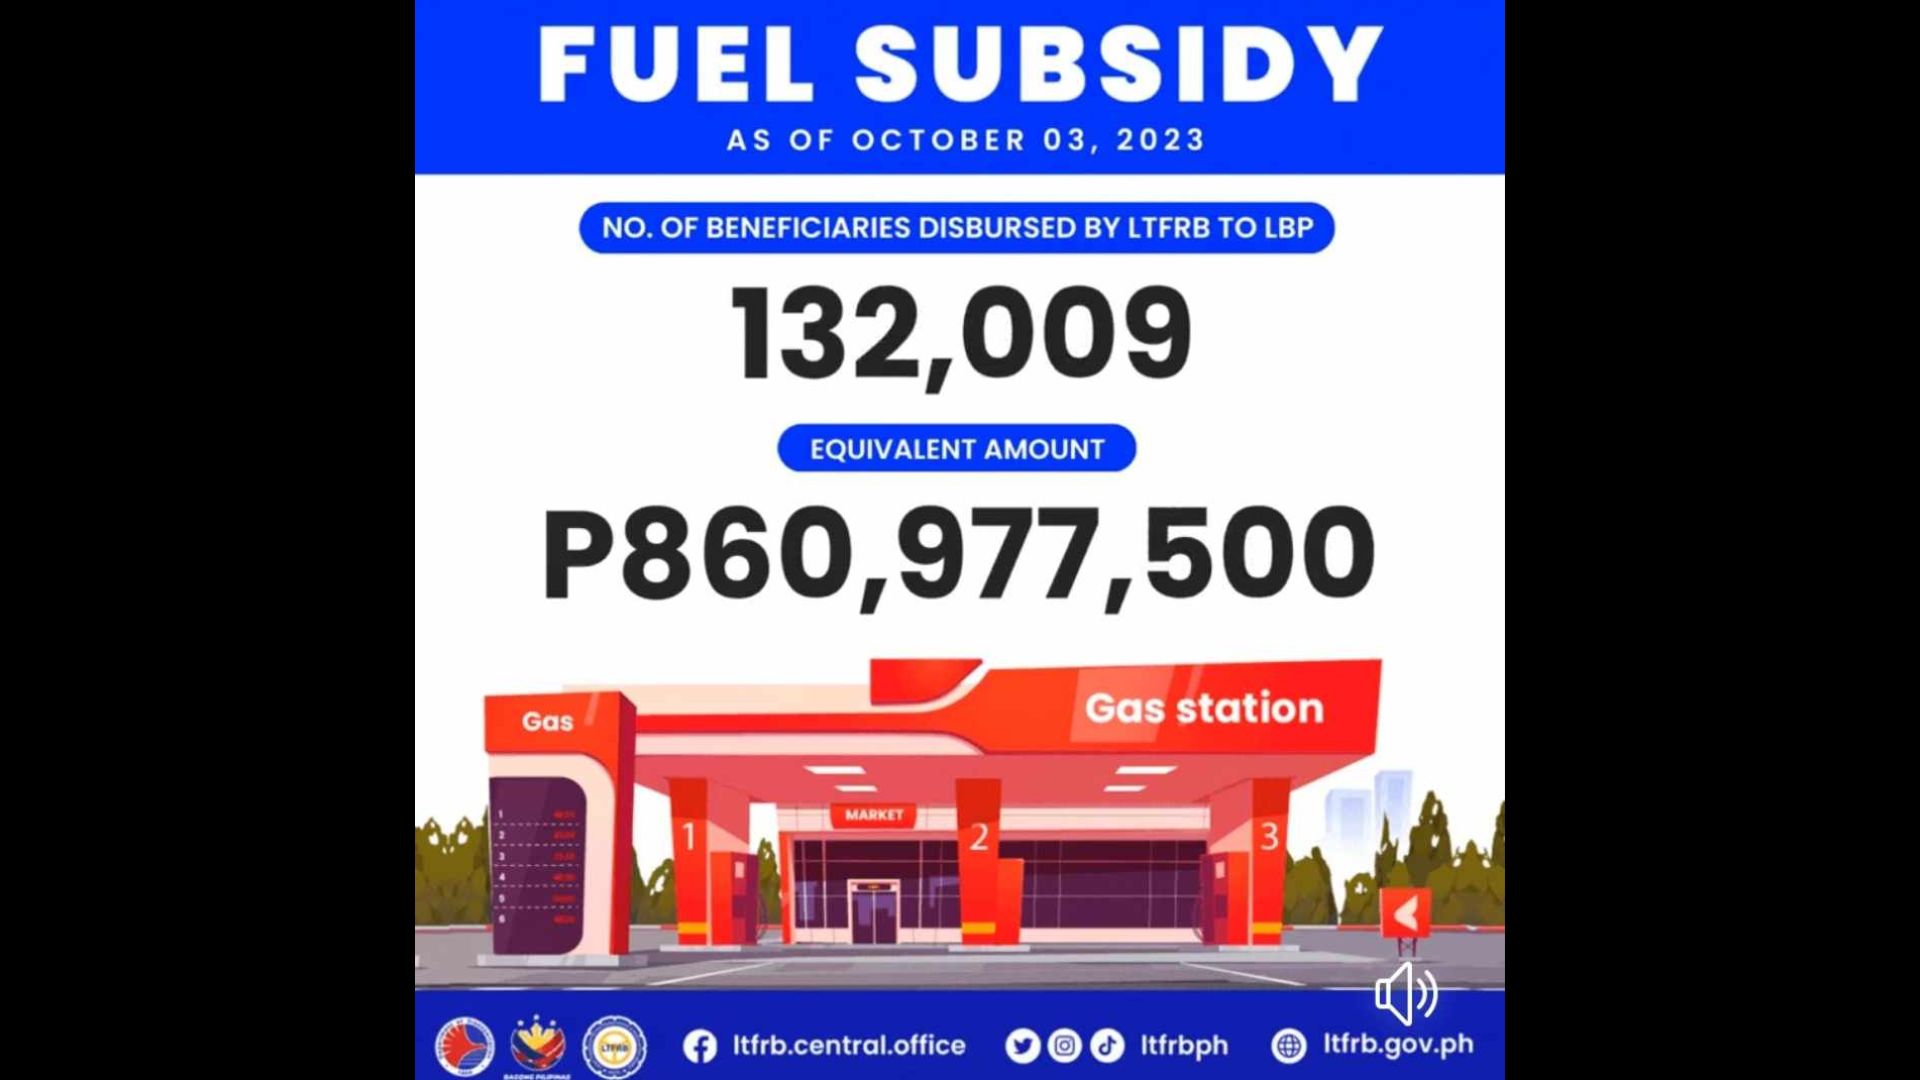 Halaga ng naipamahaging fuel subsidy ng LTFRB mahigit P860M na